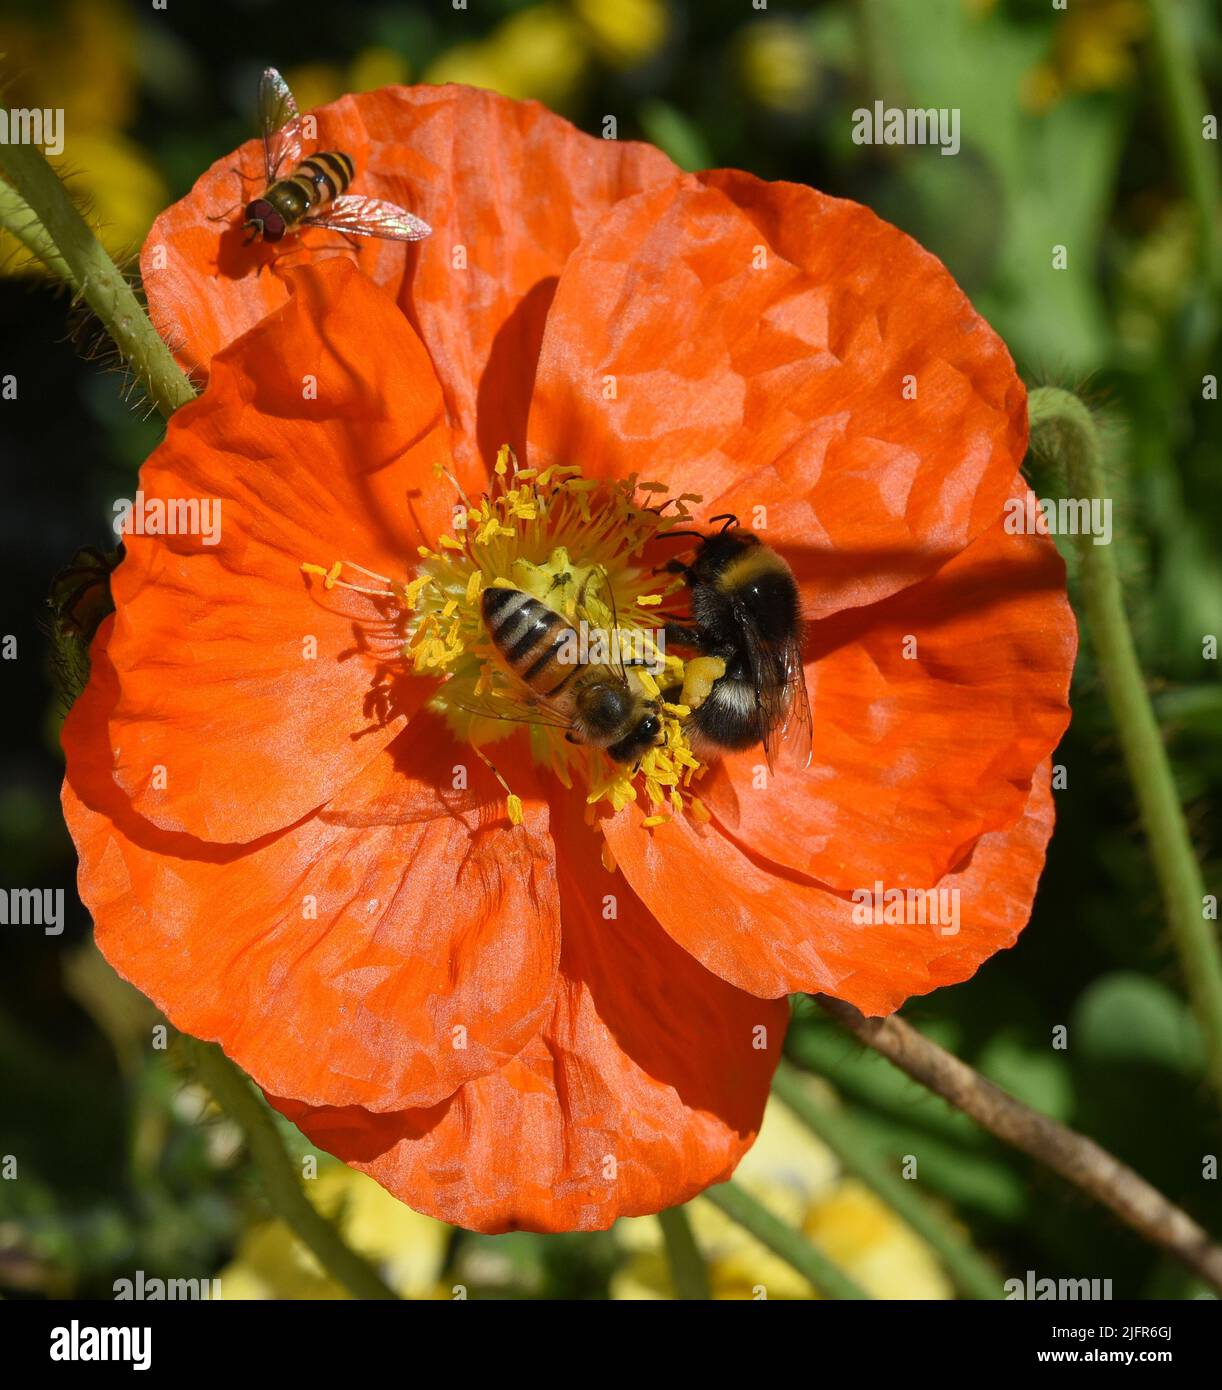 Biene, Apis mellifera, ist ein wichtiges Insekt zur Bestaeubung von Pflanzen und zum Sammeln von Honig auf Islaendischer, Mohn, Papaver, nudicaule. Ho Stock Photo